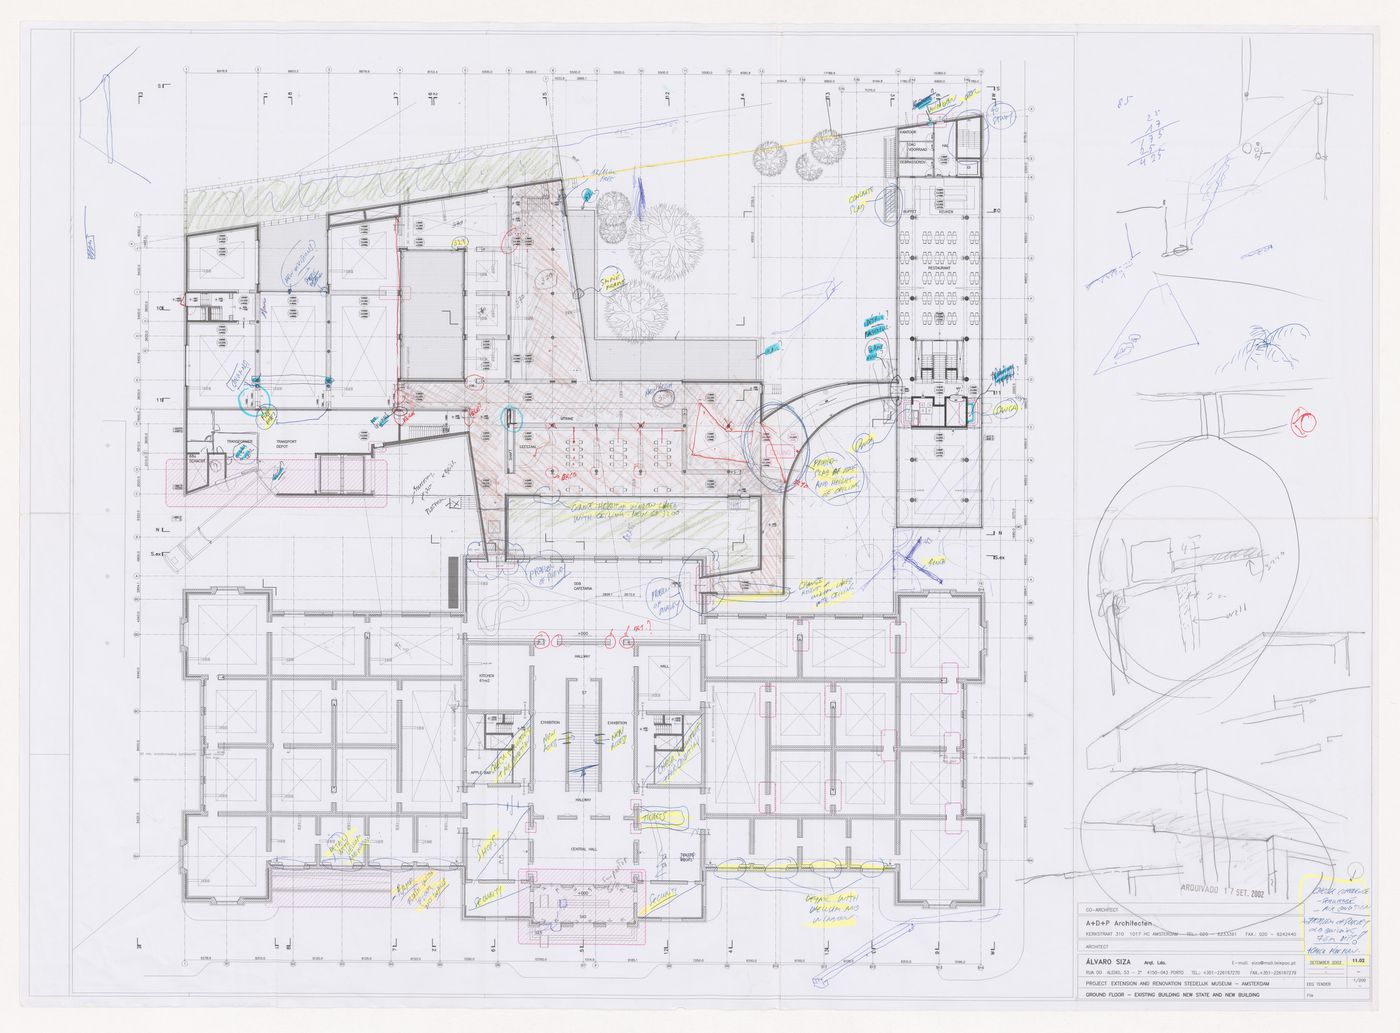 Ground plan and sketches for Renovação e extensão do Museu Stedelijk [Restoration and extension of Stedelijk Museum], Amsterdam